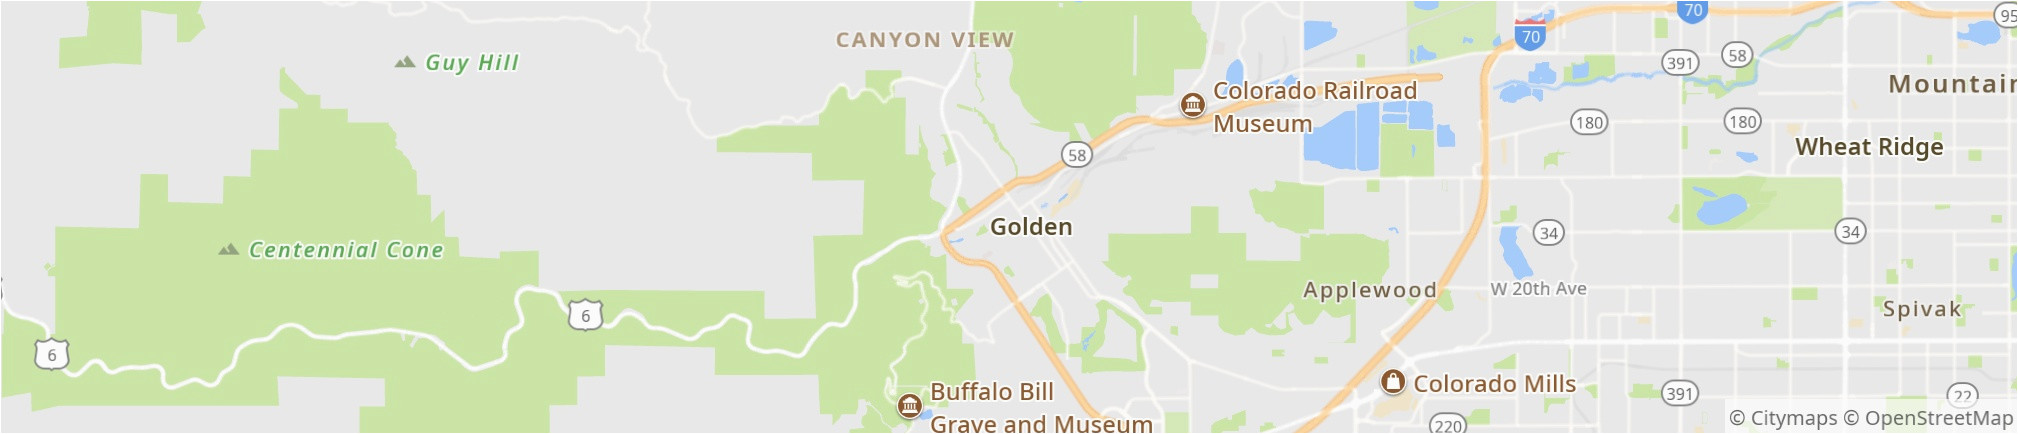 golden 2019 best of golden co tourism tripadvisor